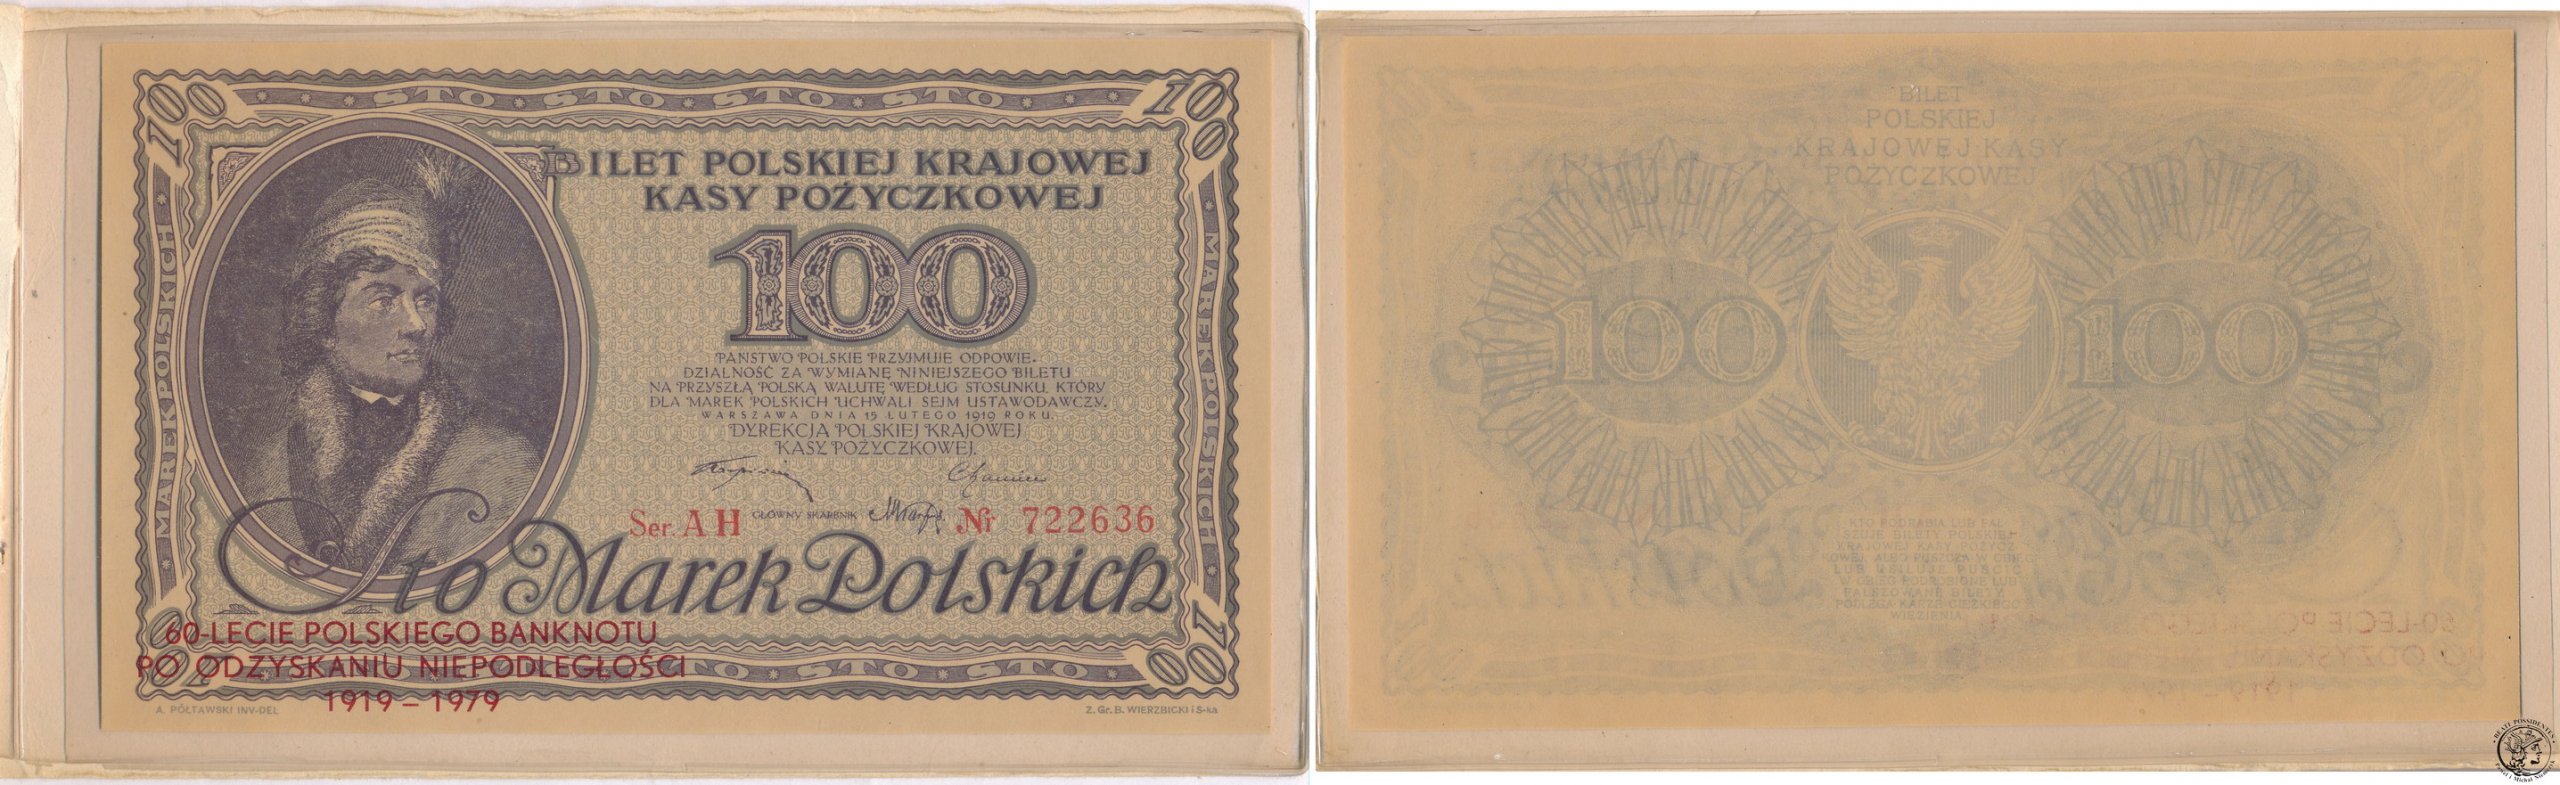 Kościuszko 100 marek polskich 1919 st. 1 (UNC)